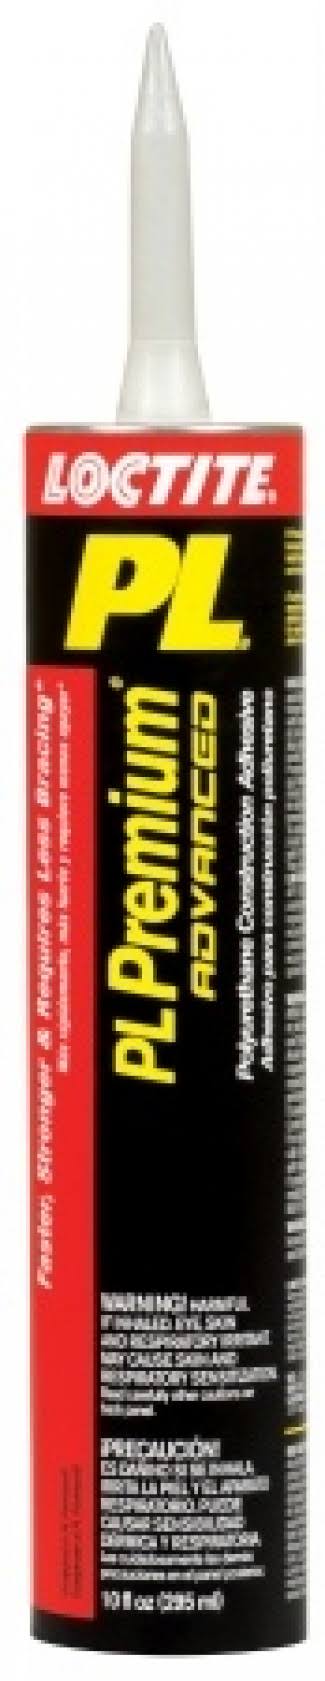 Loctite PL Premium Fast Grab Polyurethane Construction Adhesive